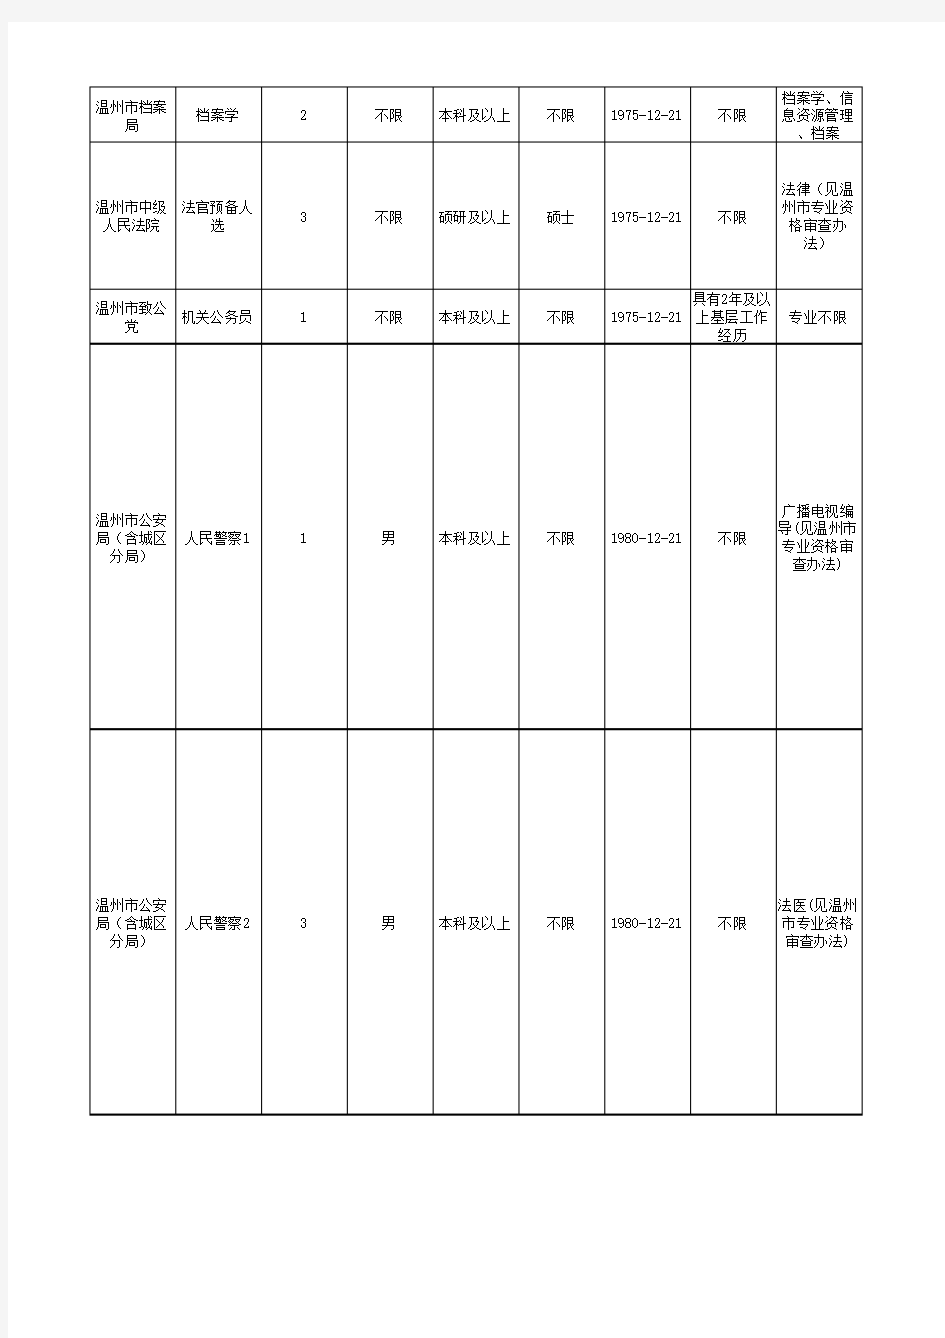 2012年浙江省各级机关考试录用公务员招考计划汇总表